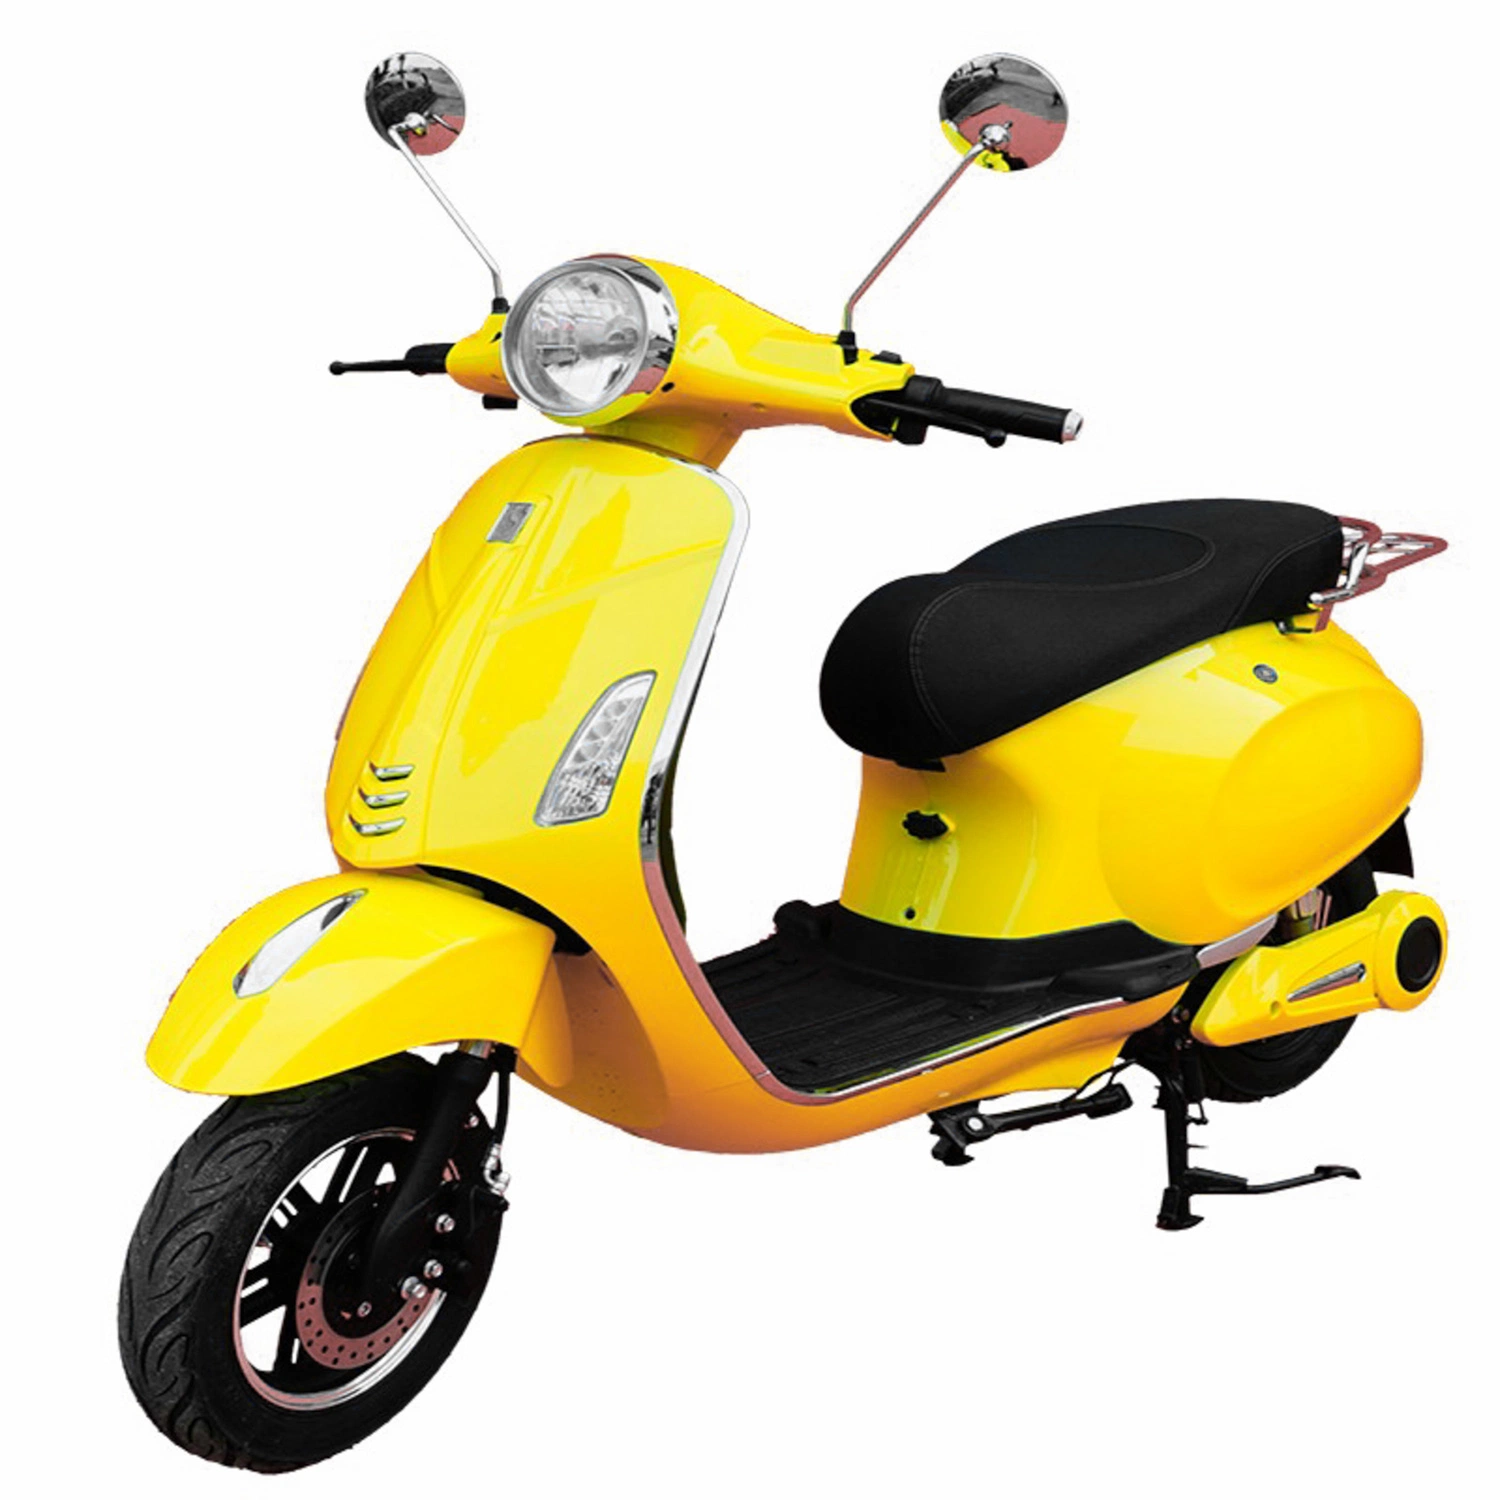 Scooter électrique de mobilité de haute qualité pour adultes.